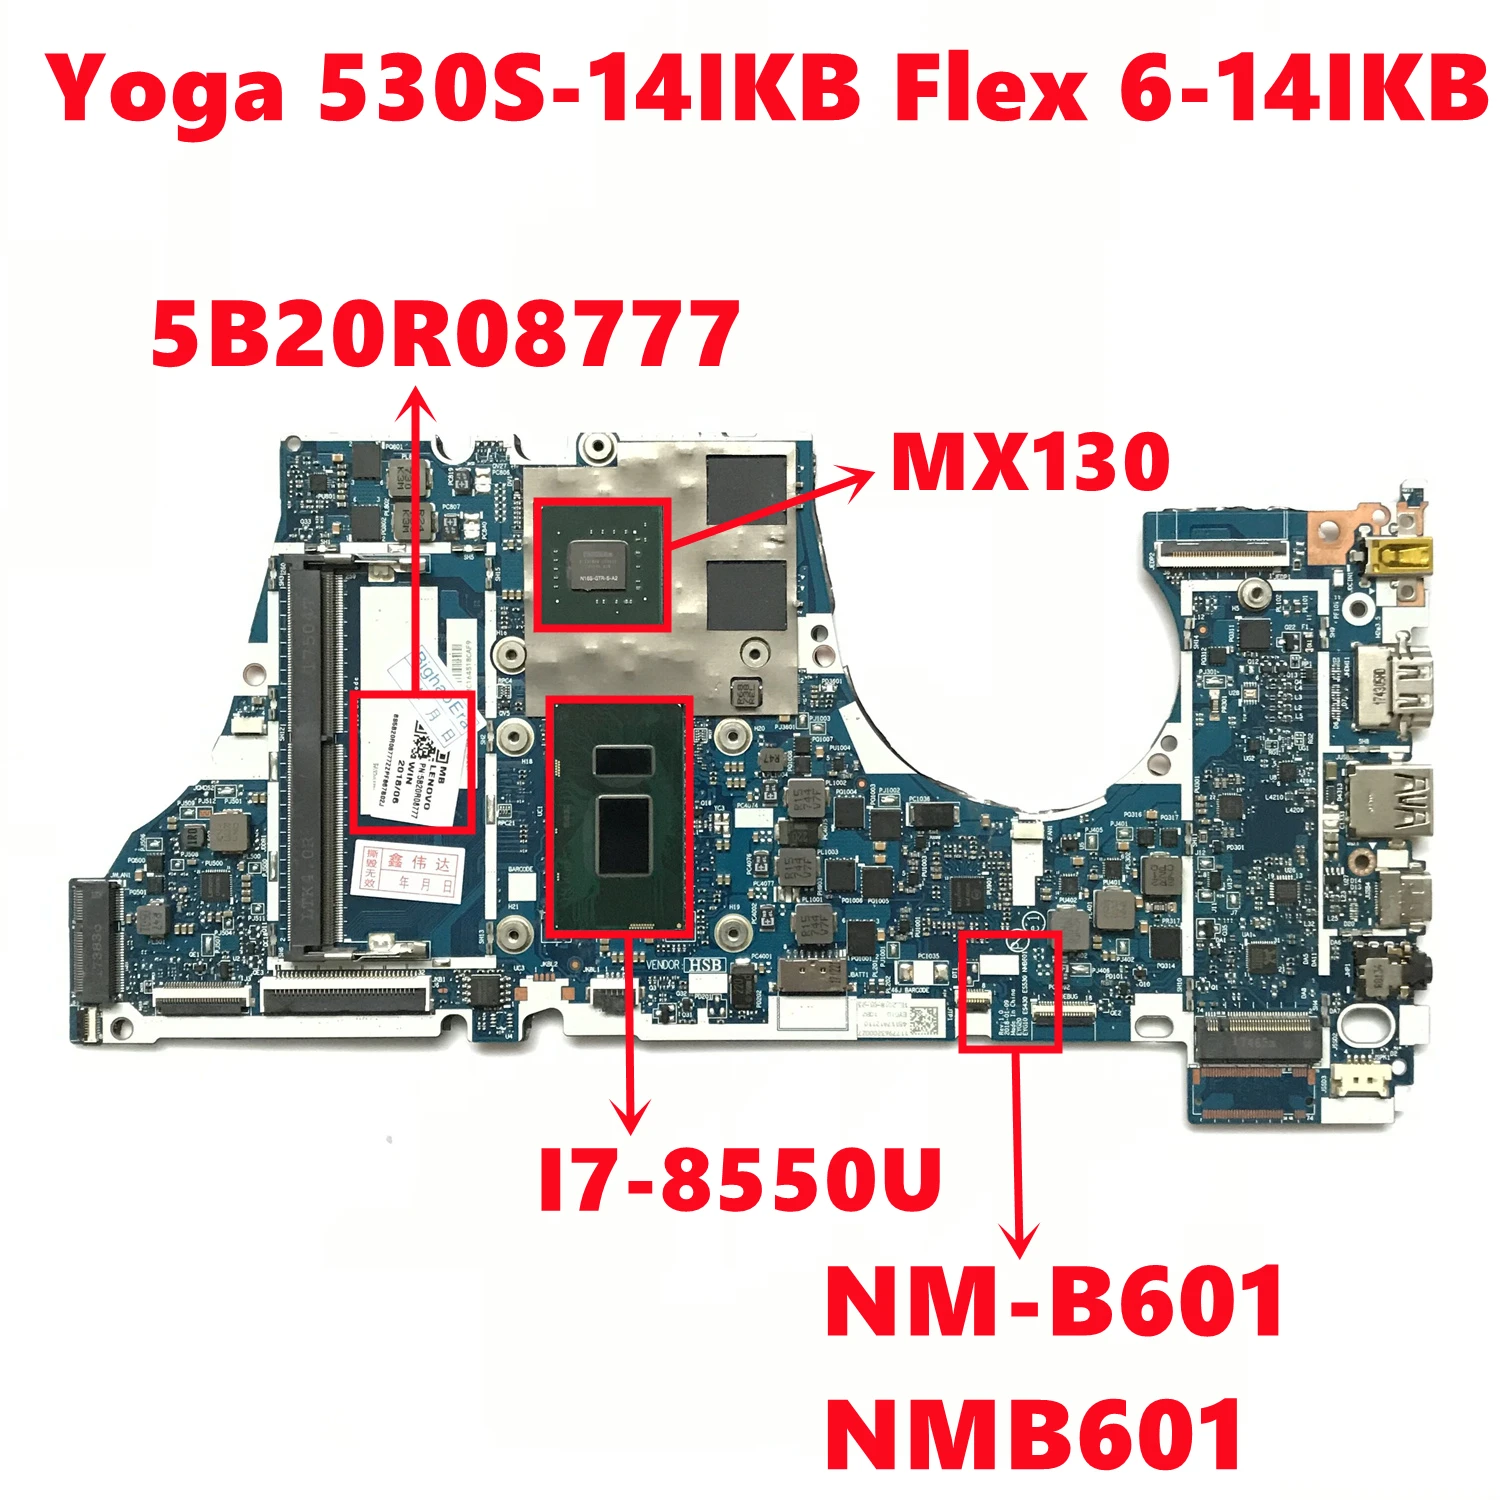 

5B20R08777 For Lenovo IdeaPad Yoga 530S-14IKB Flex 6-14IKB Laptop Motherboard NM-B601 NMB601 W/ I7-8550U N16S-GTR-S-A2 100% Test